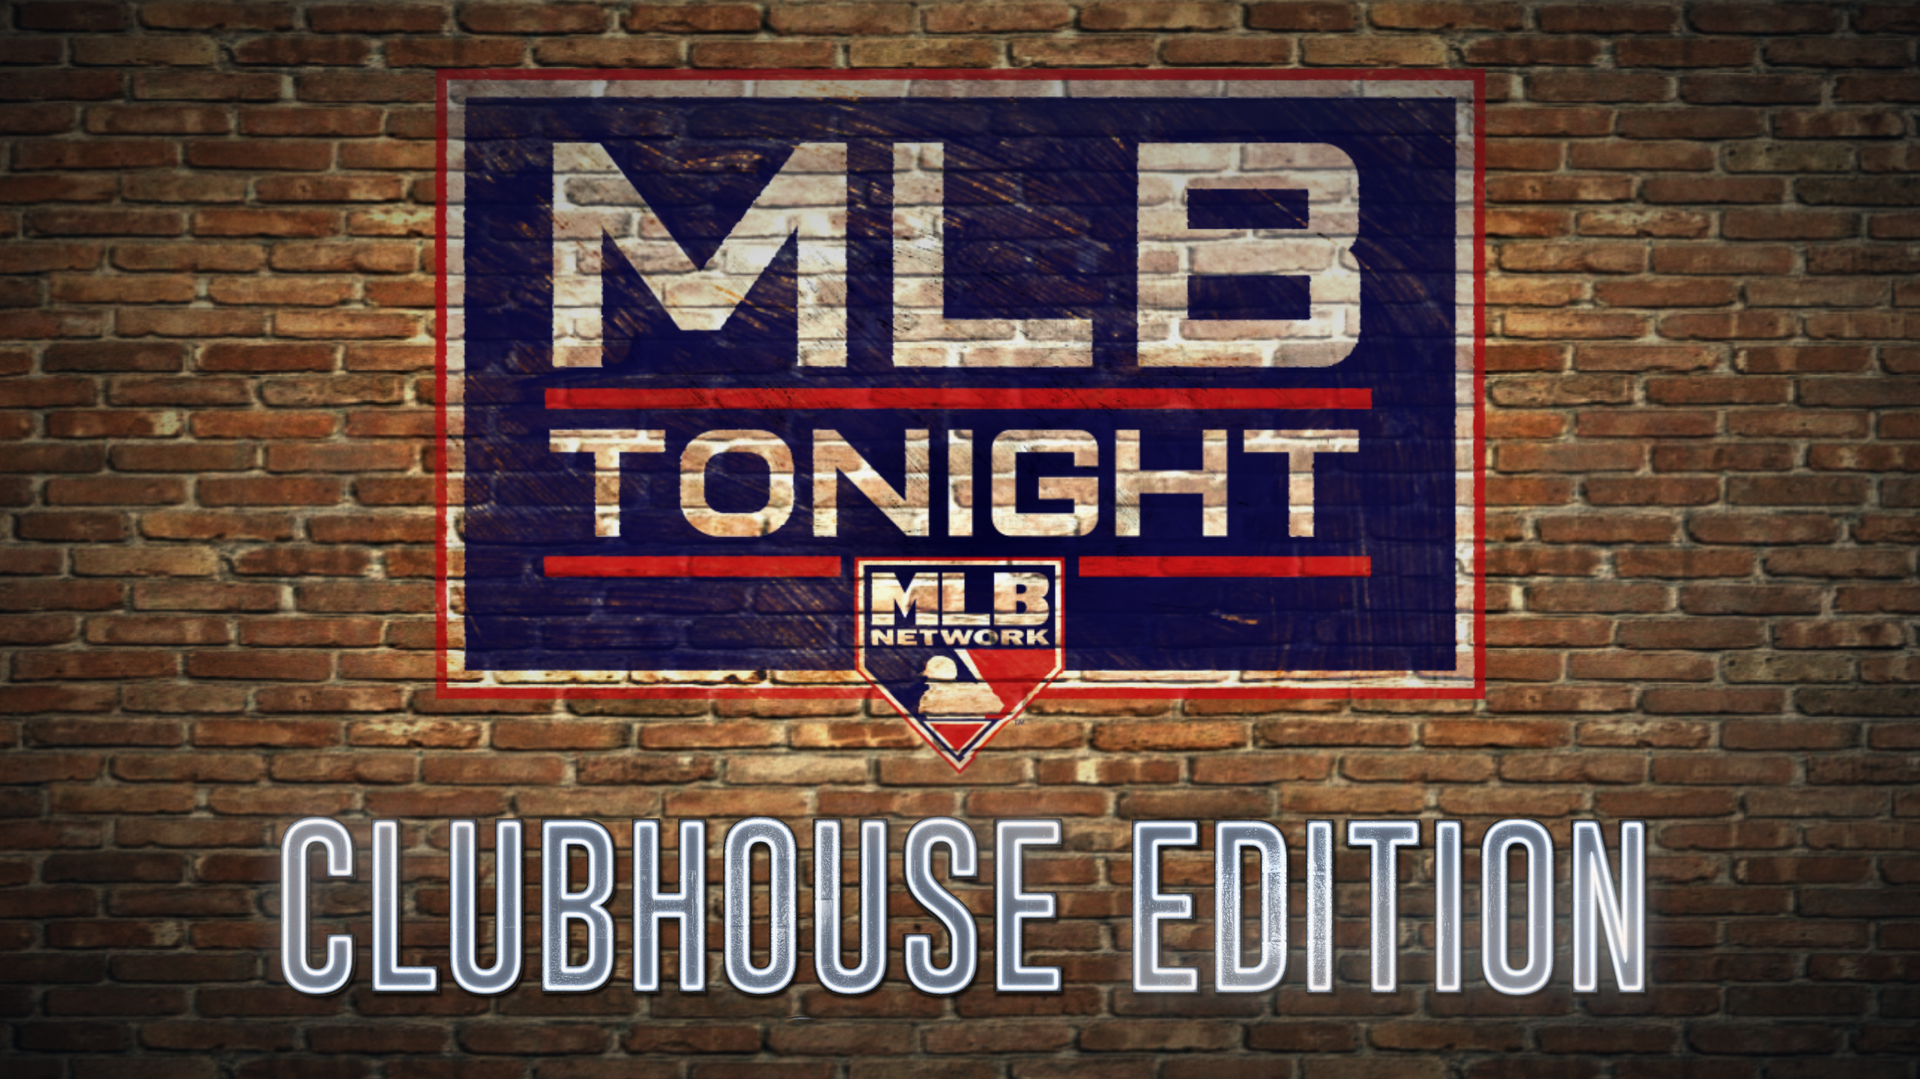 MLB Tonight logo